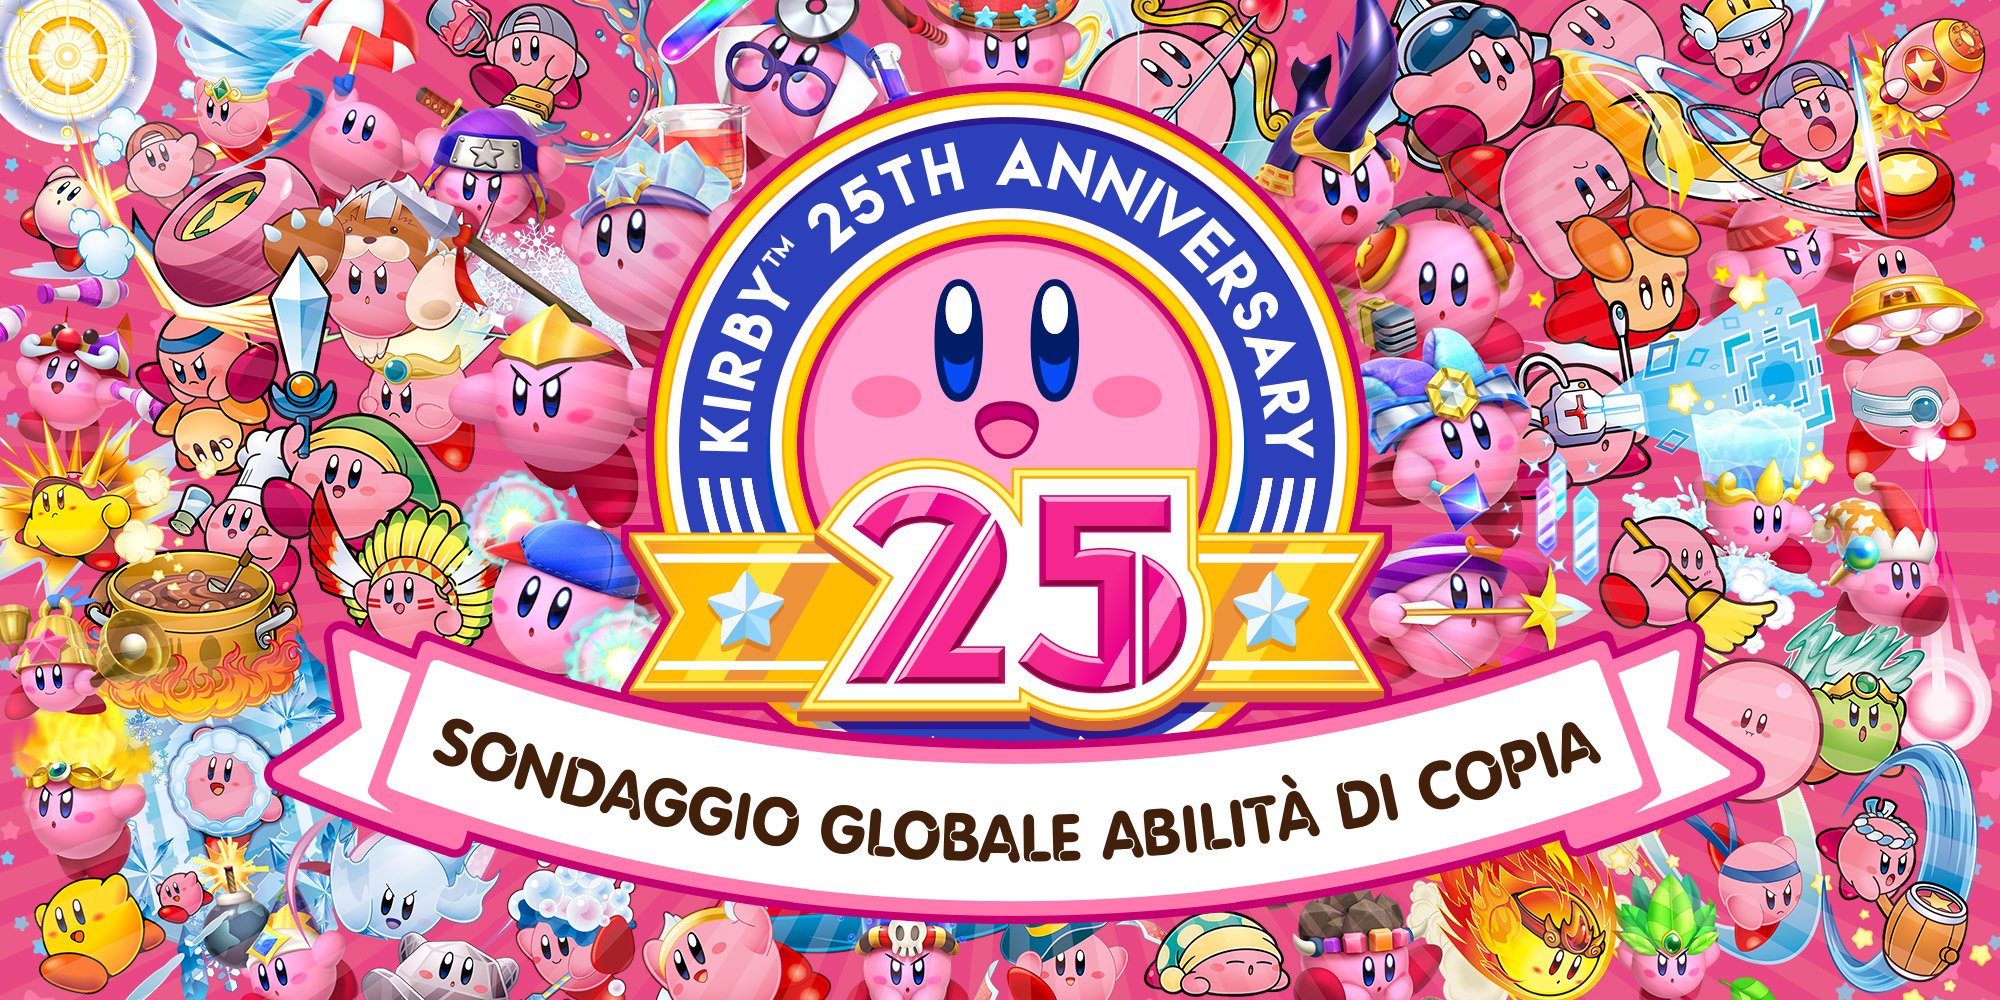 Kirby 25th Anniversary Sondaggio Globale Abilita Di Copia Nintendo